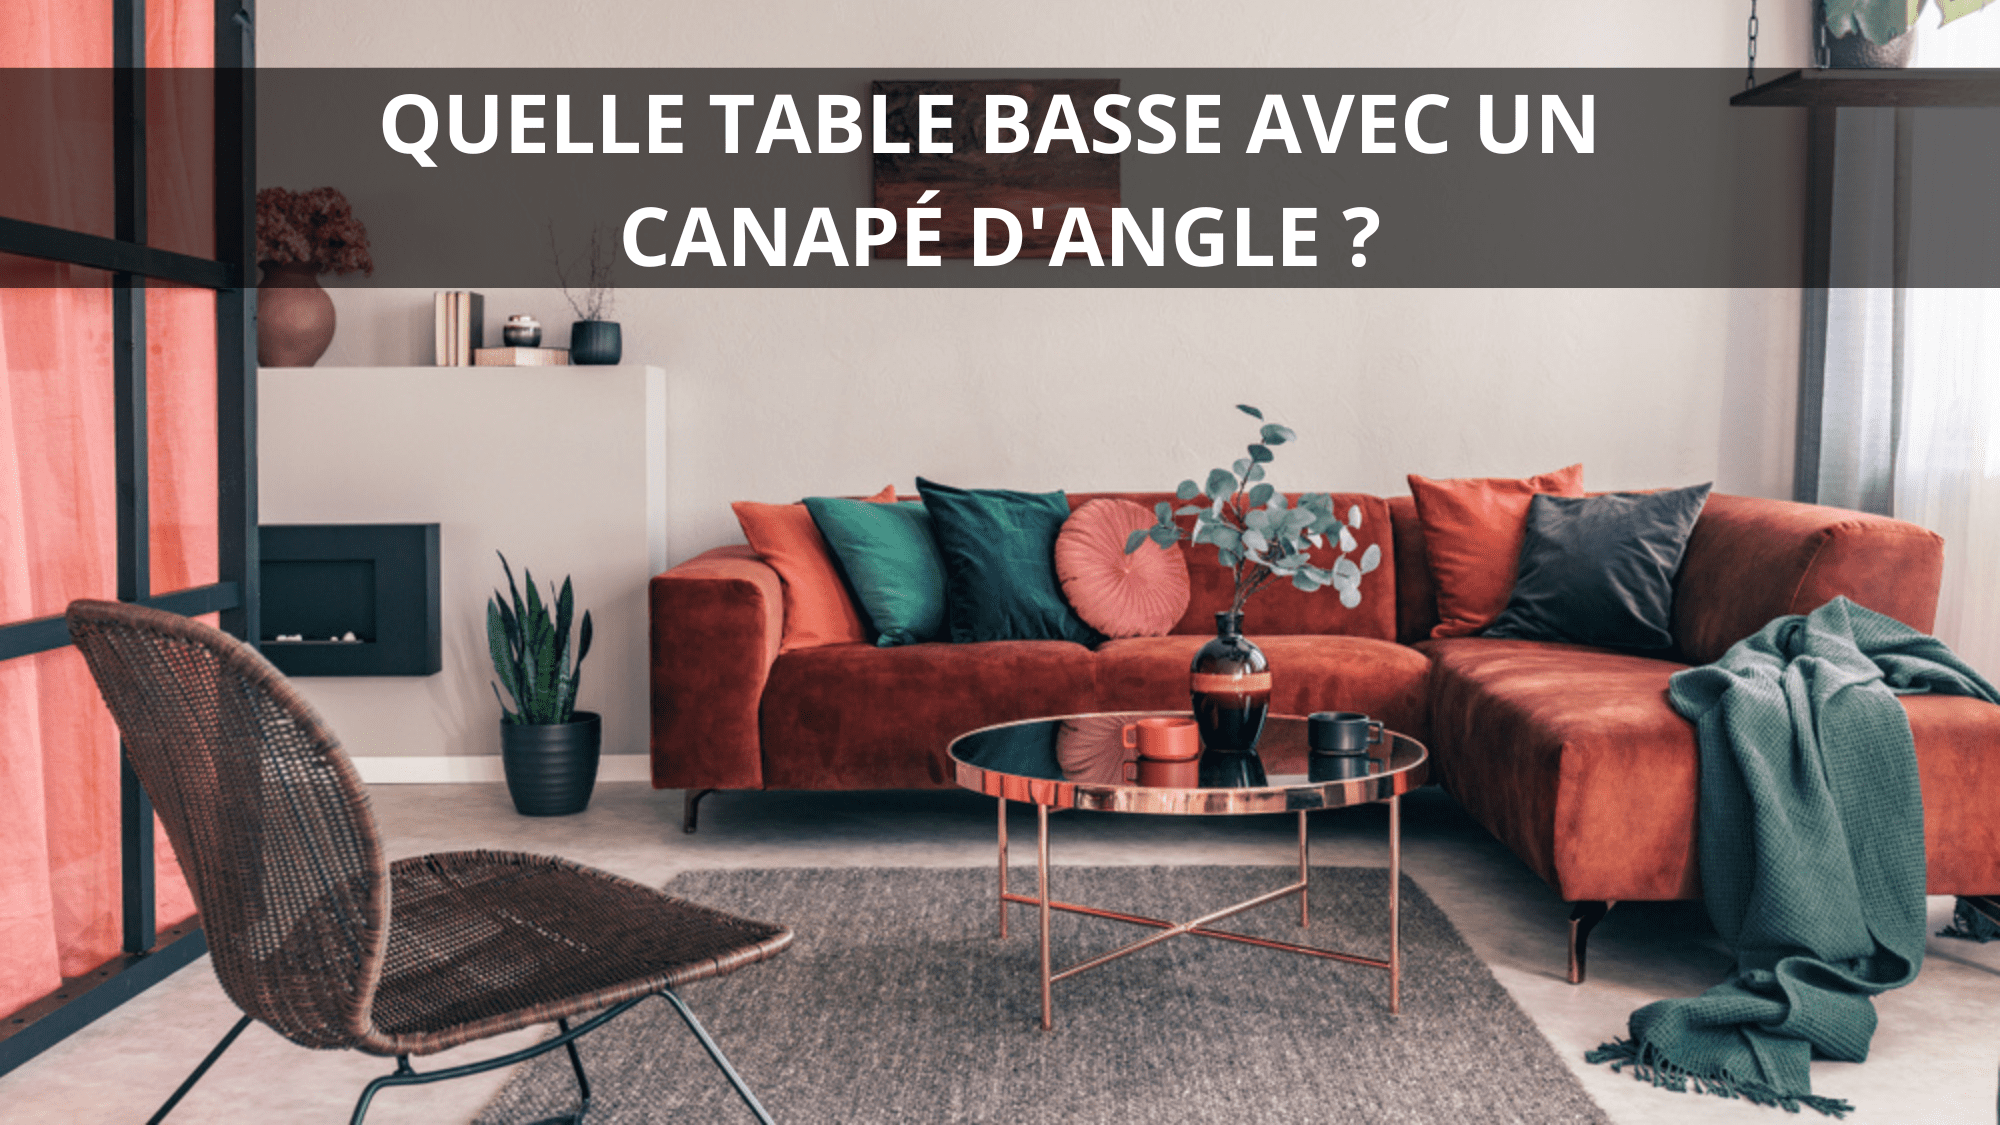 Quelle table basse avec un canapé d’angle ?